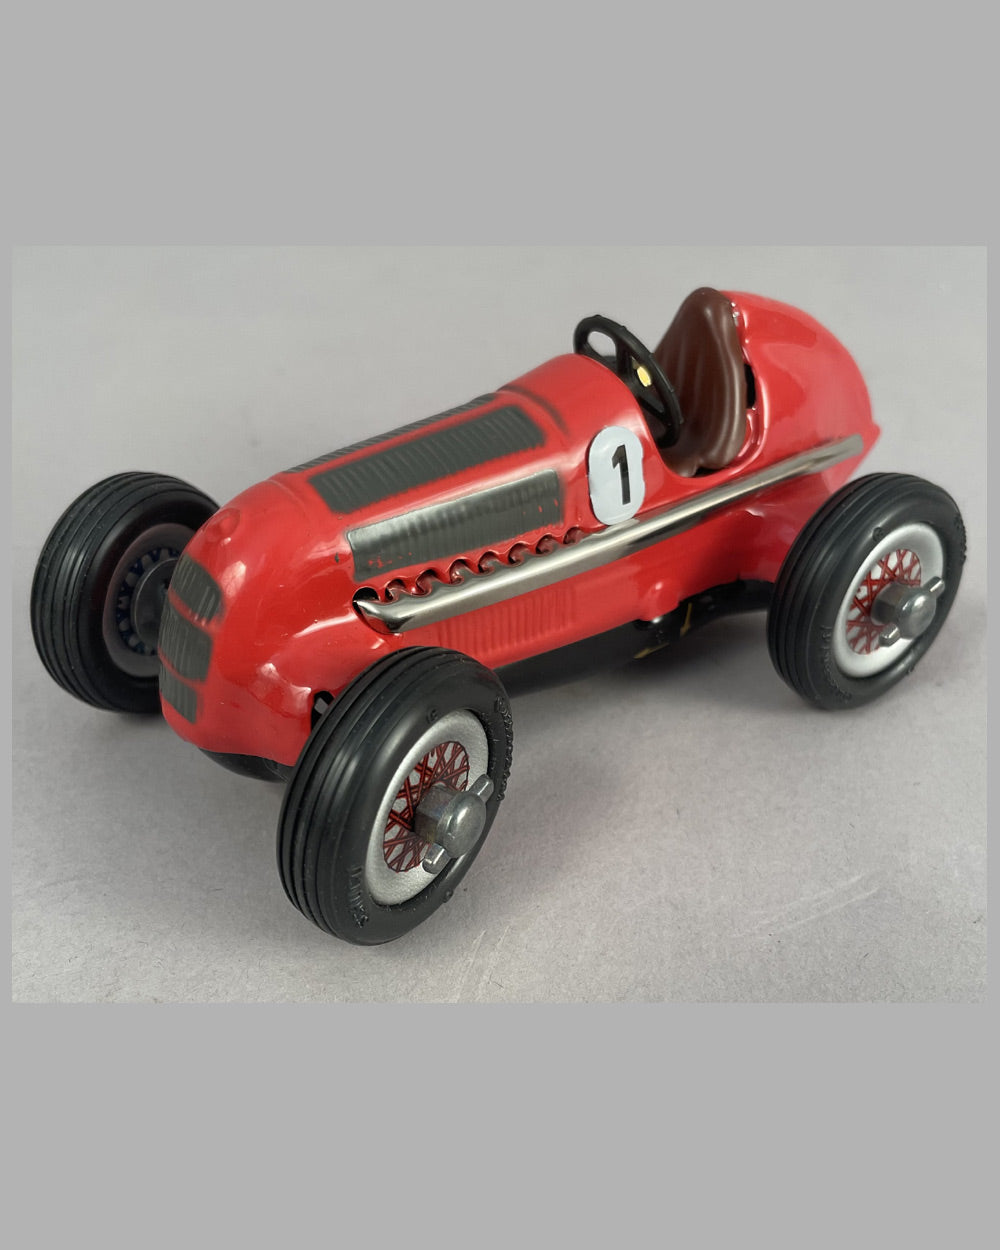 Schuco Studio 1050 1936 Mercedes Grand Prix metal toy - l'art et l